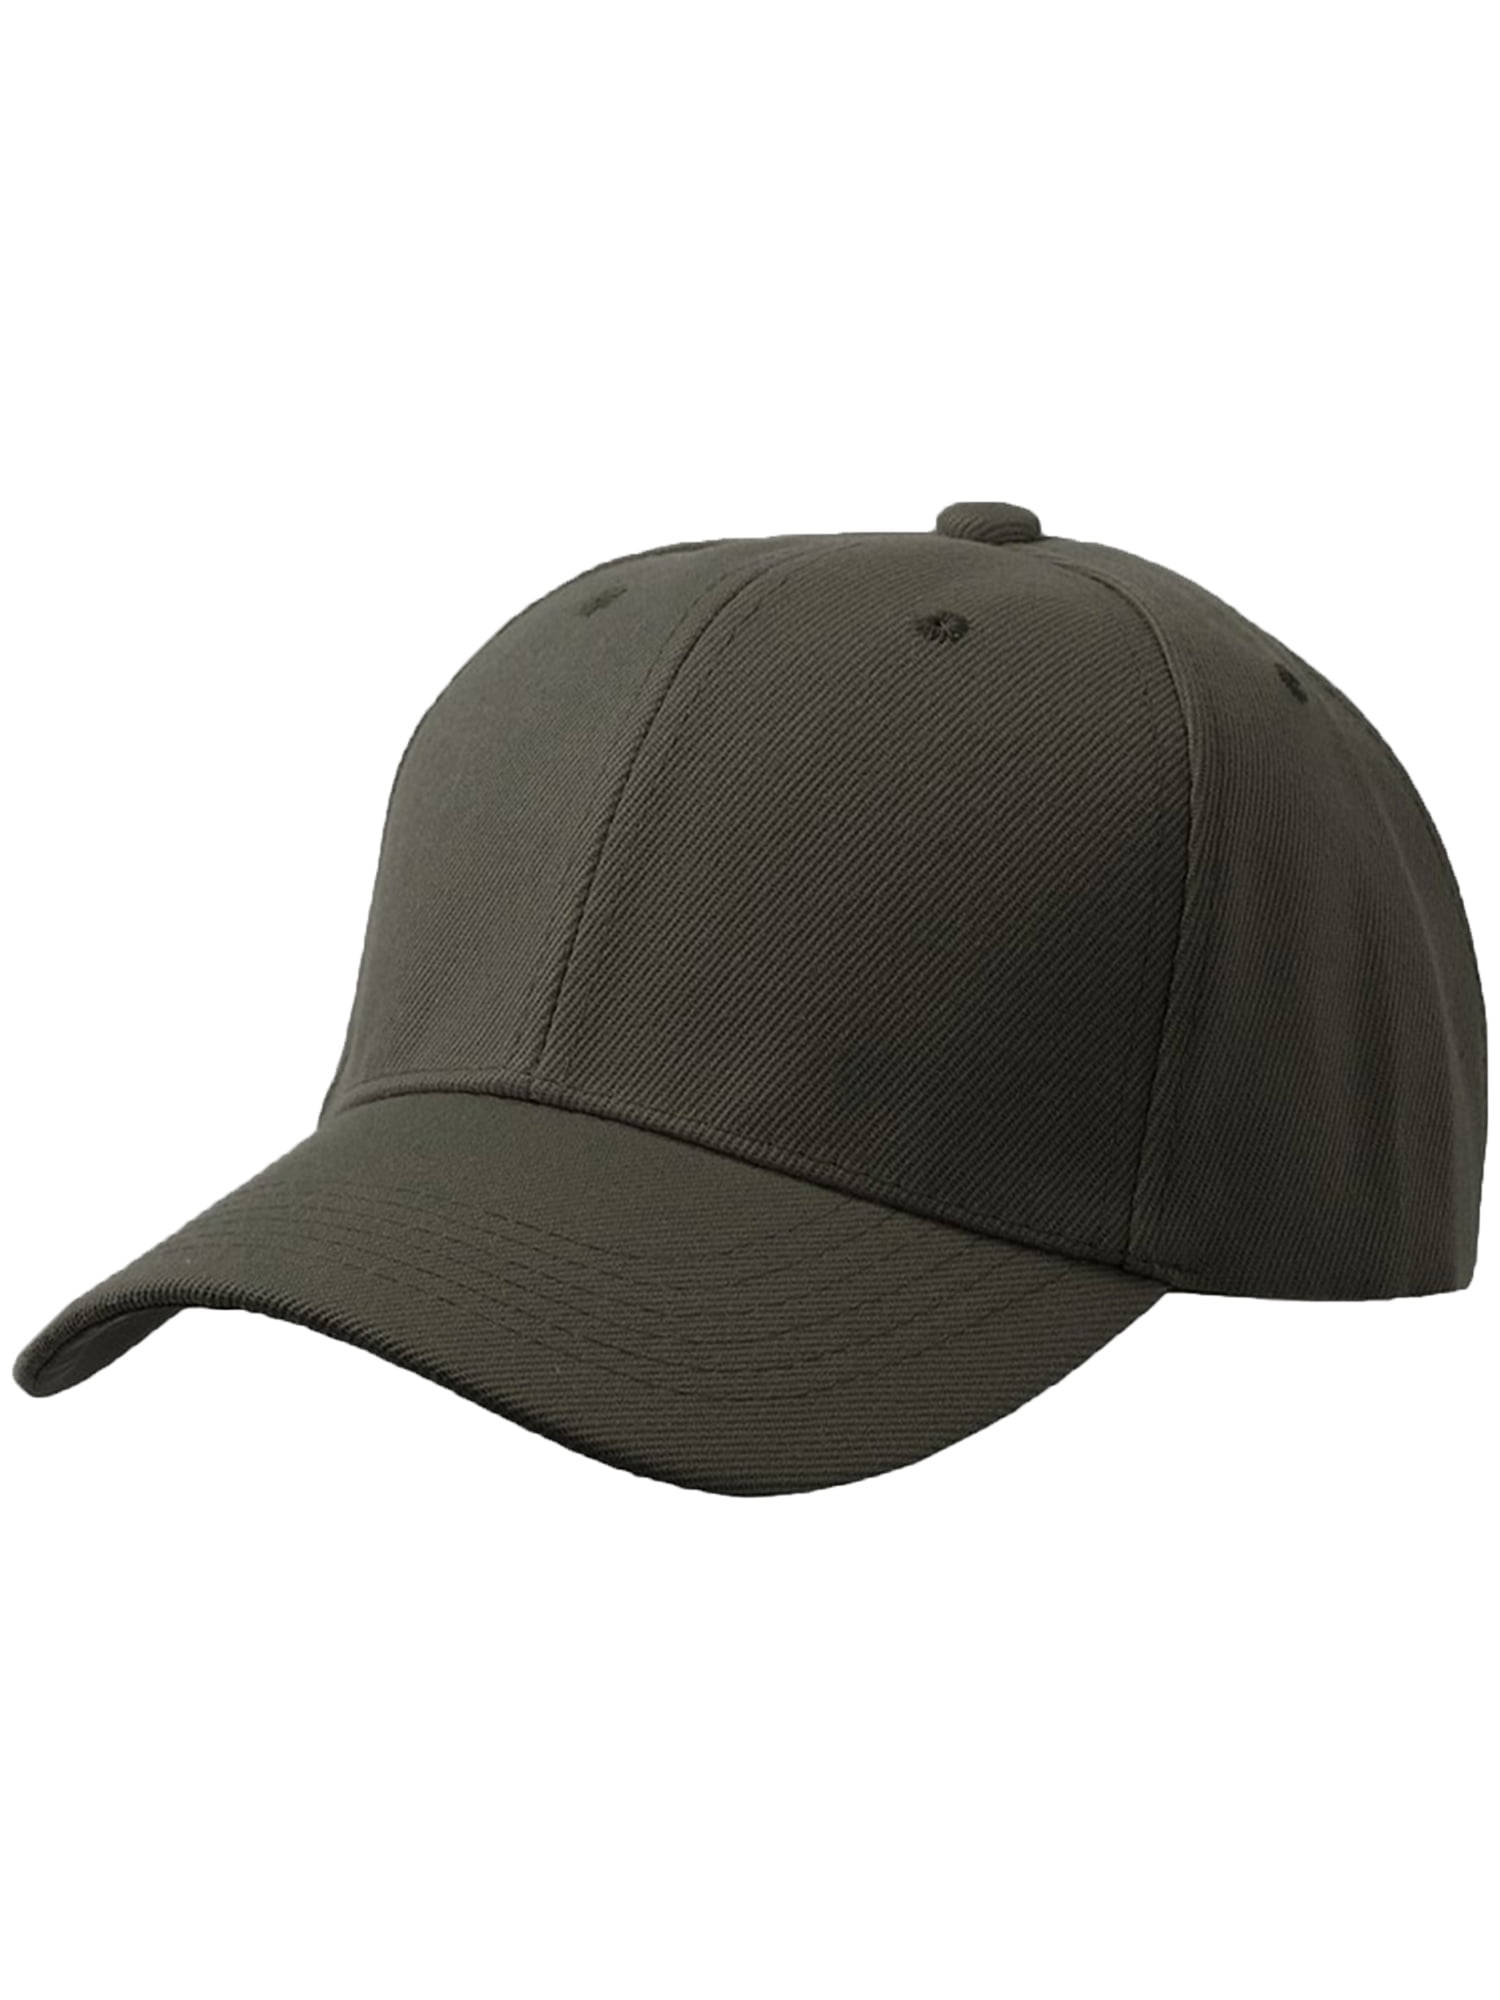 Men\'s Plain Baseball Cap Adjustable Curved Visor Hat-3P Black Charcoal  Olive